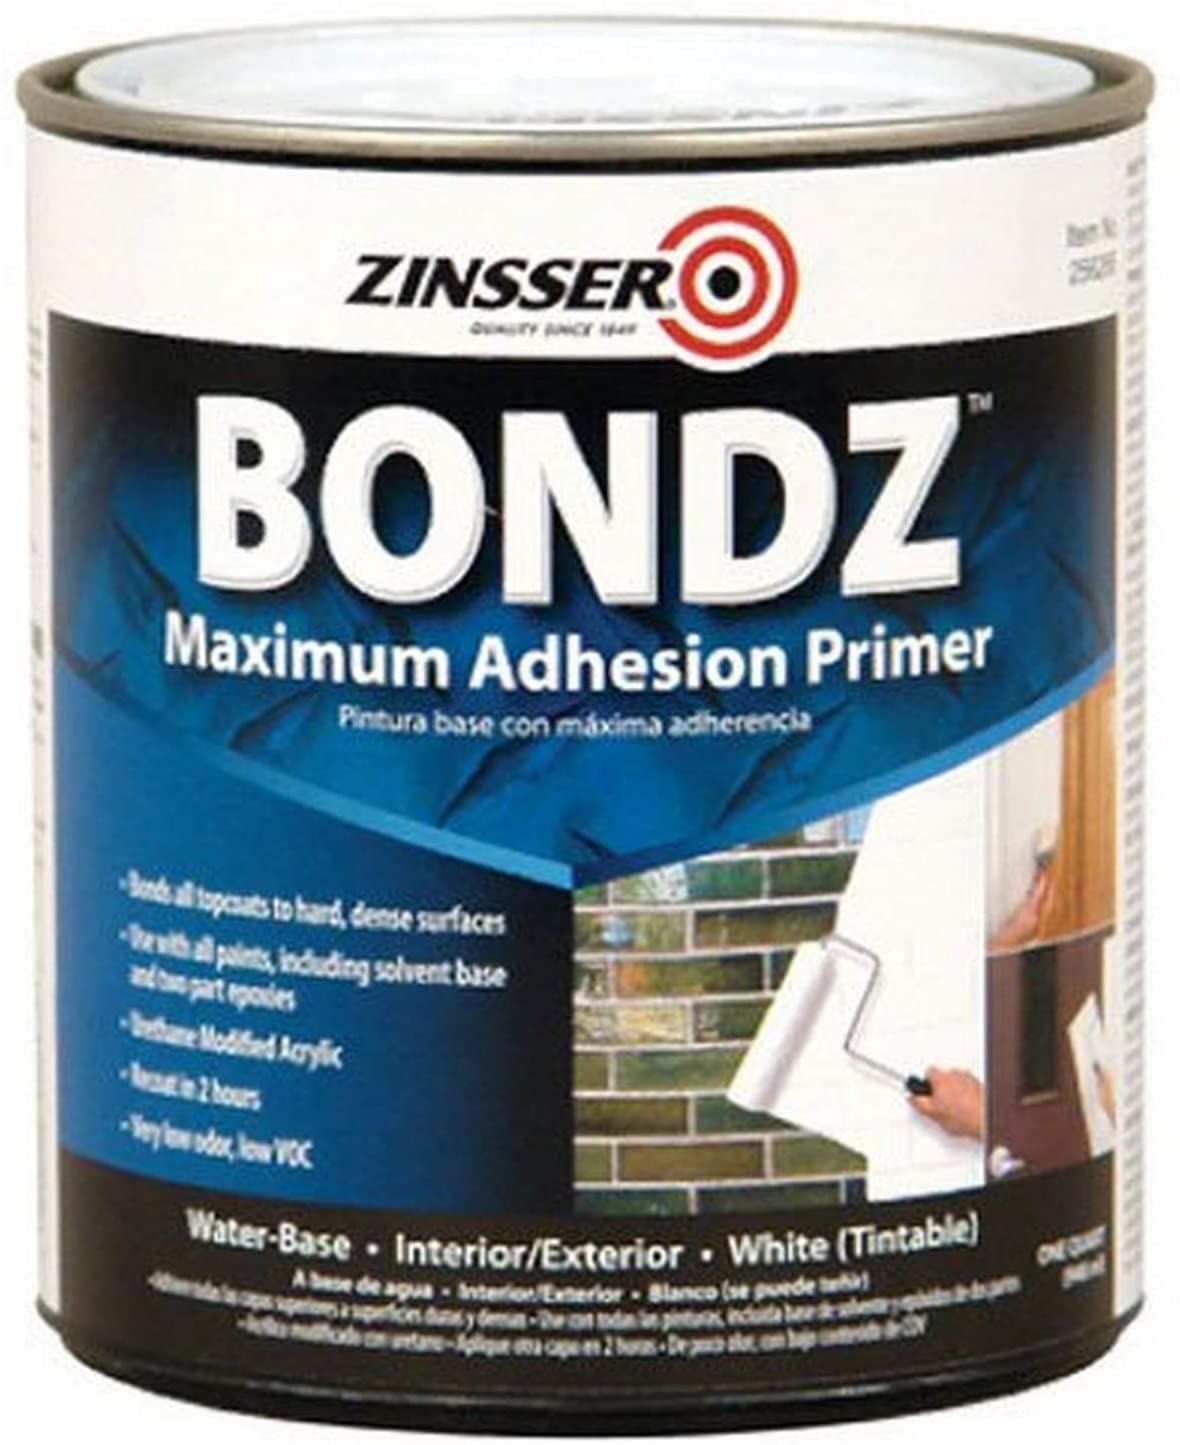 Zinsser Bondz Maximum Adhesion Primer